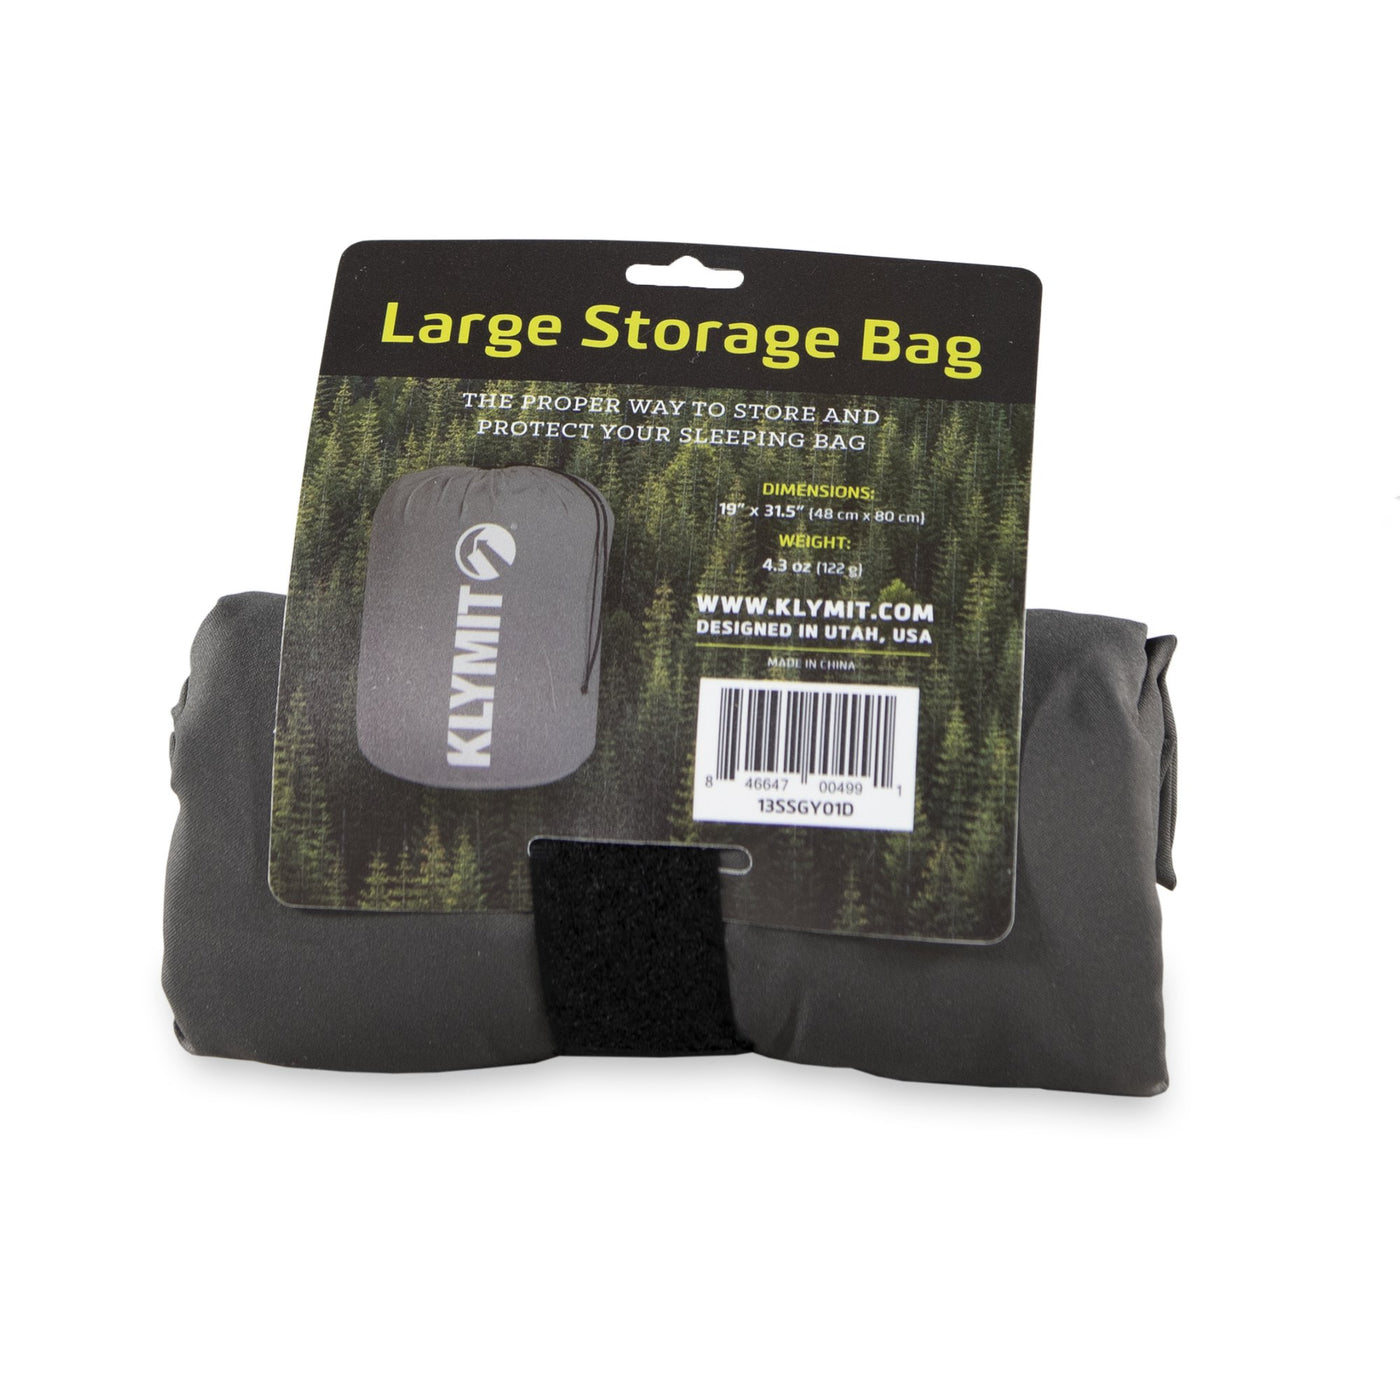 Large Storage Bag by Klymit - Peak Outdoors - Klymit -